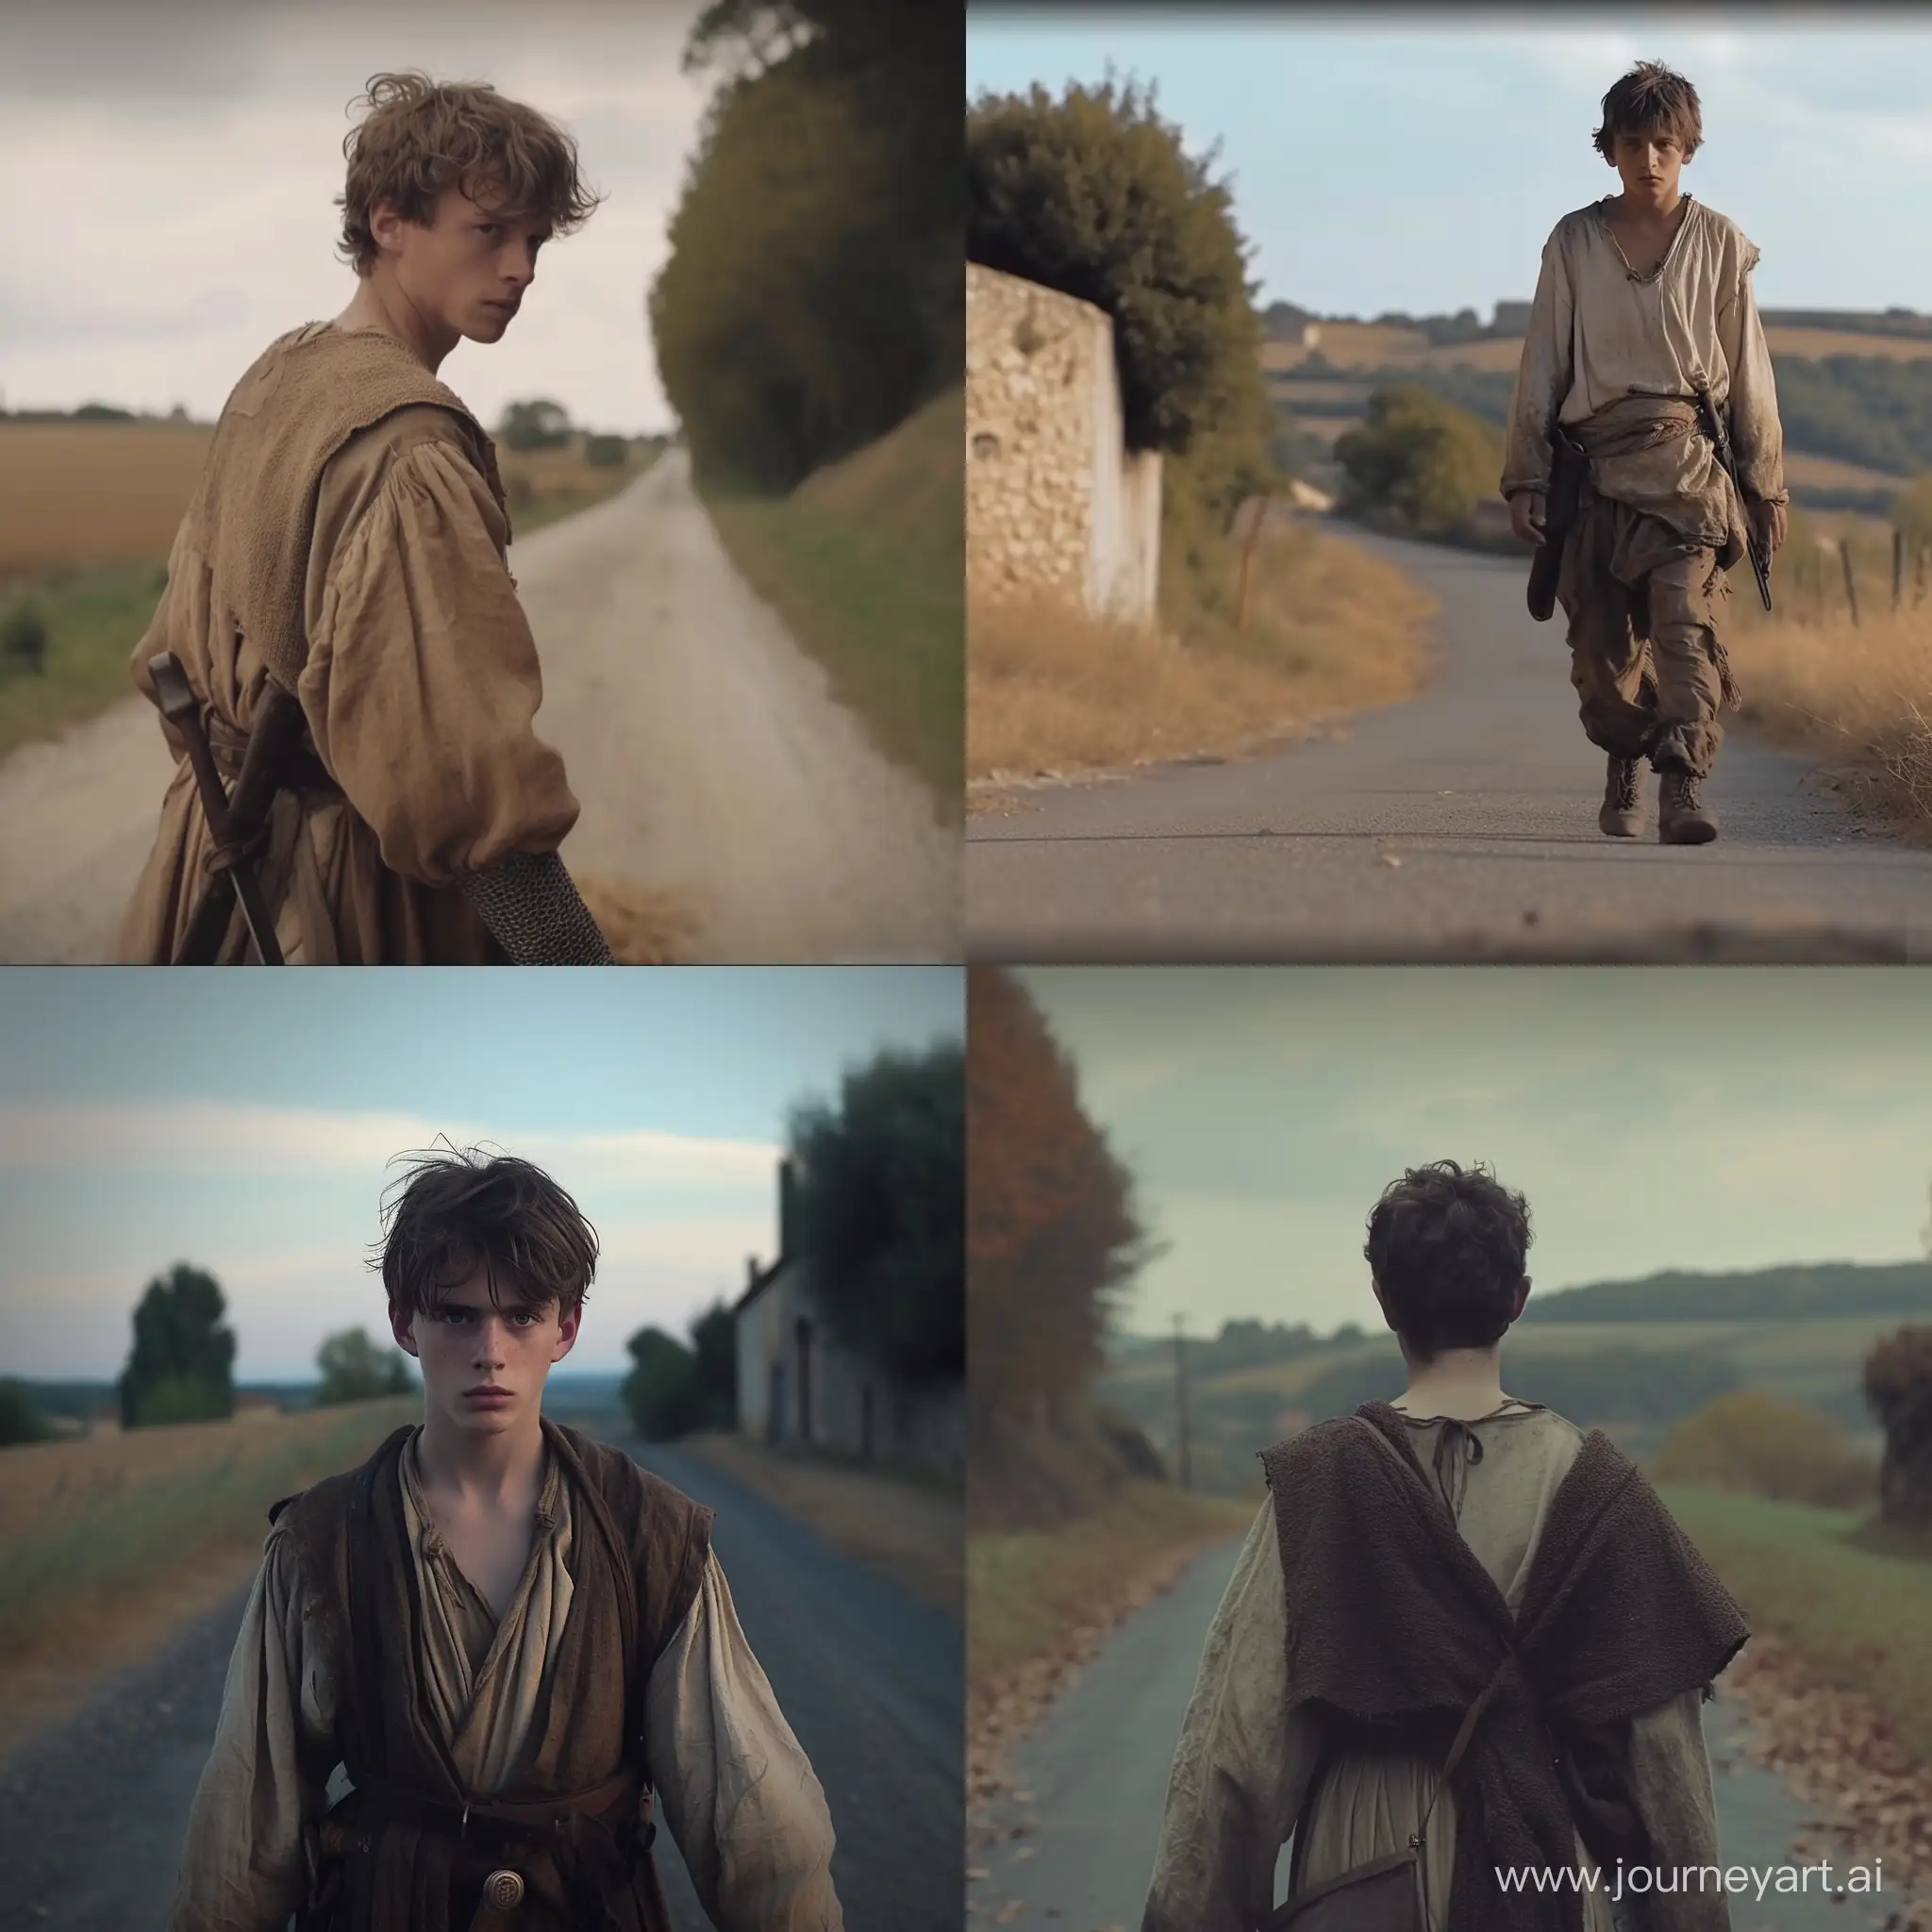 видео про расстроенного подростка-пастуха, живущего во Франции в 13 веке. Он идет по дороге и оглядывается на нас